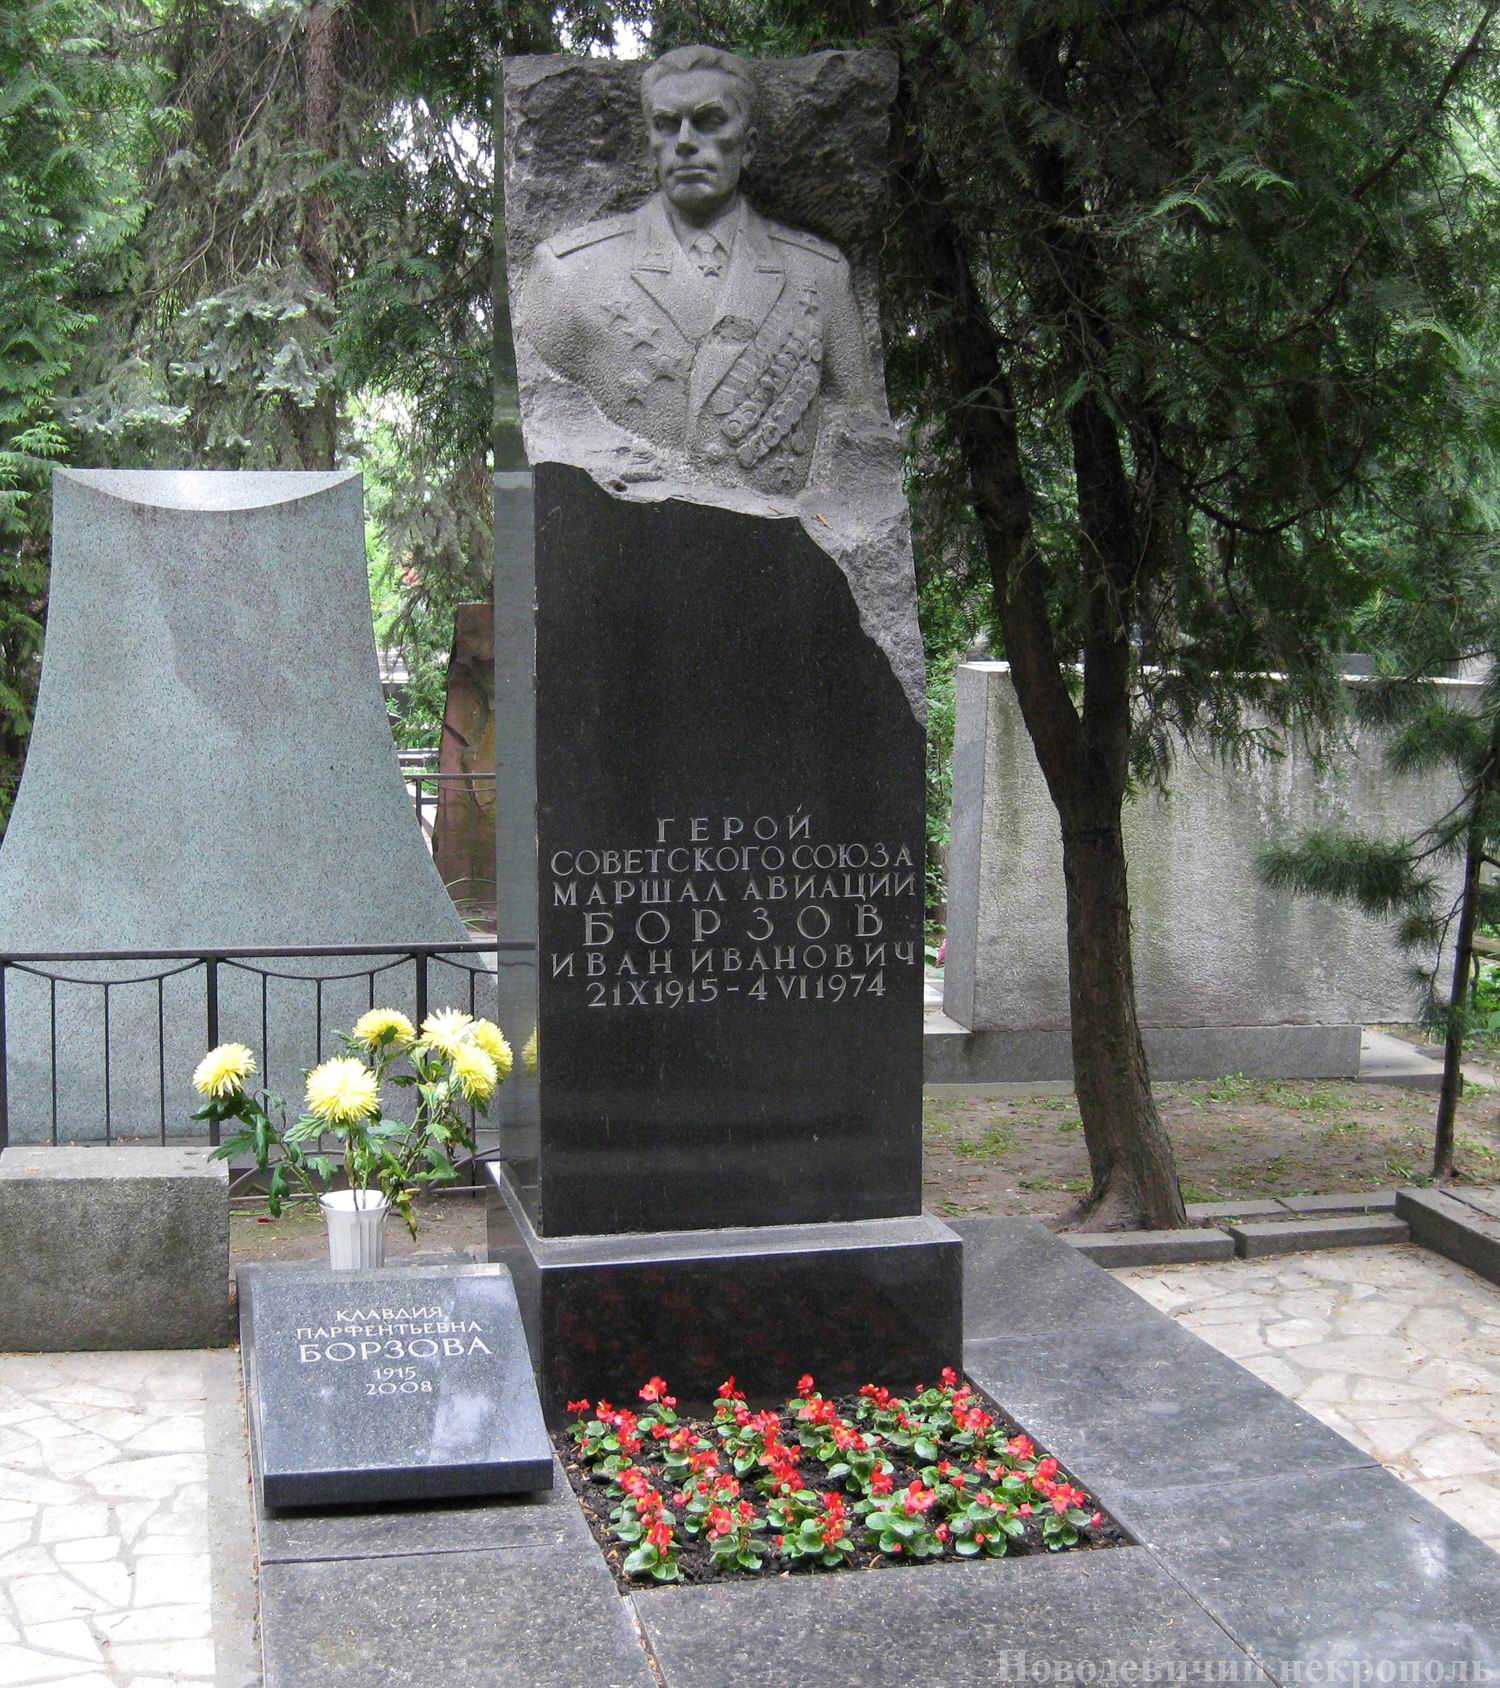 Памятник на могиле Борзова И.И. (1915-1974), ск. О.Манизер, на Новодевичьем кладбище (1-43-10).